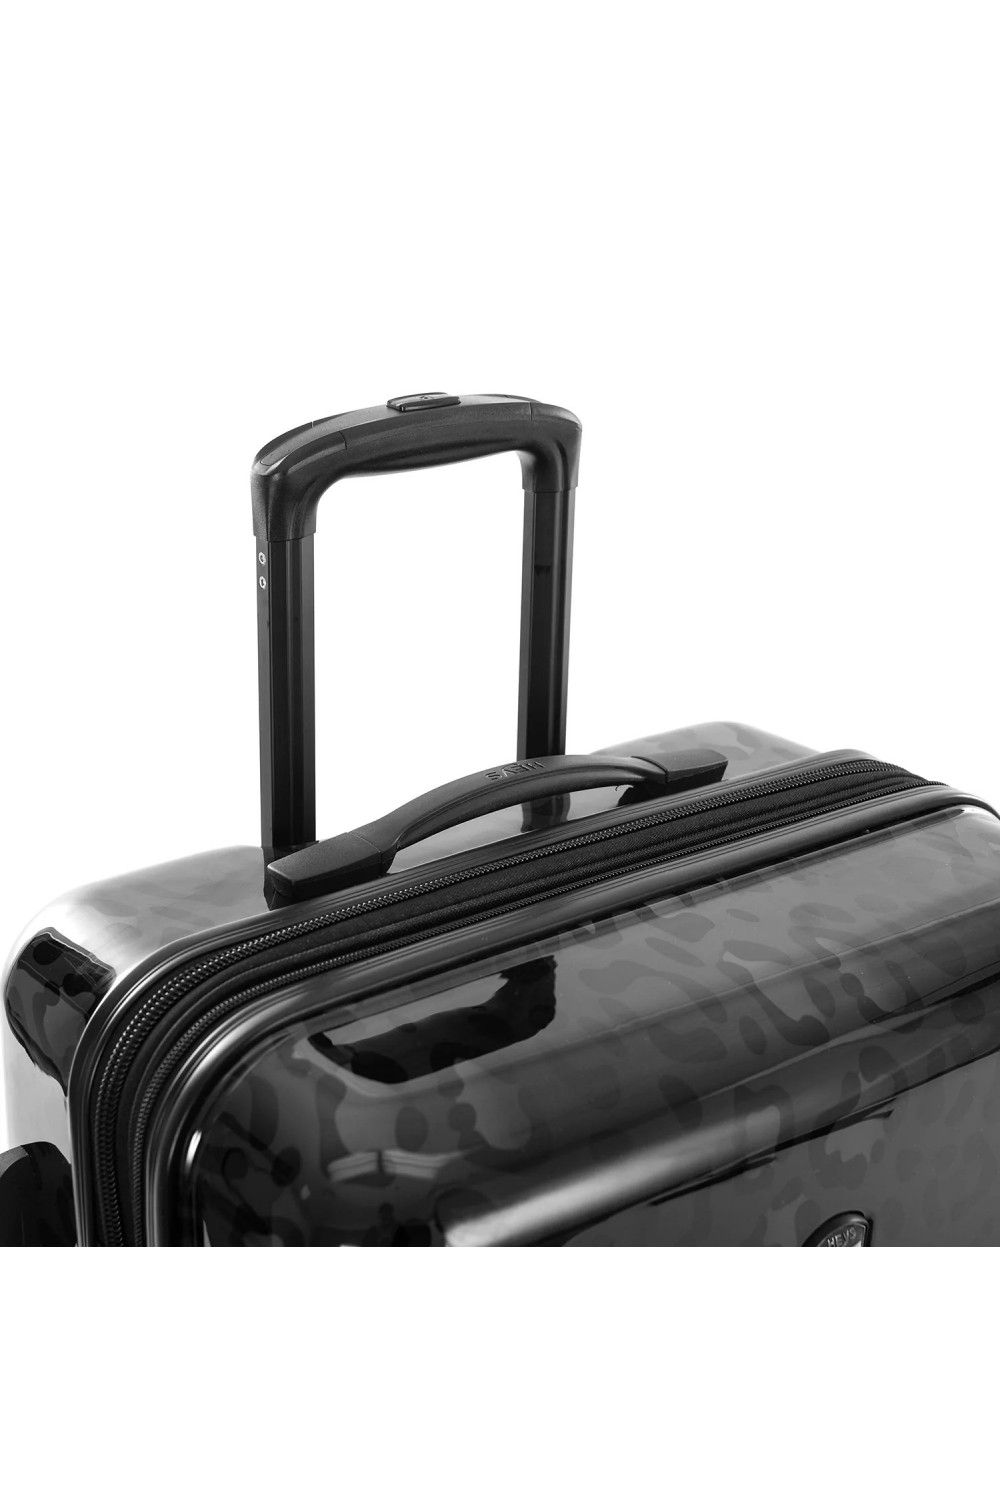 Koffer Handgepäck Heys Black Leopard Fashion 4 Rad 55cm erweiterbar